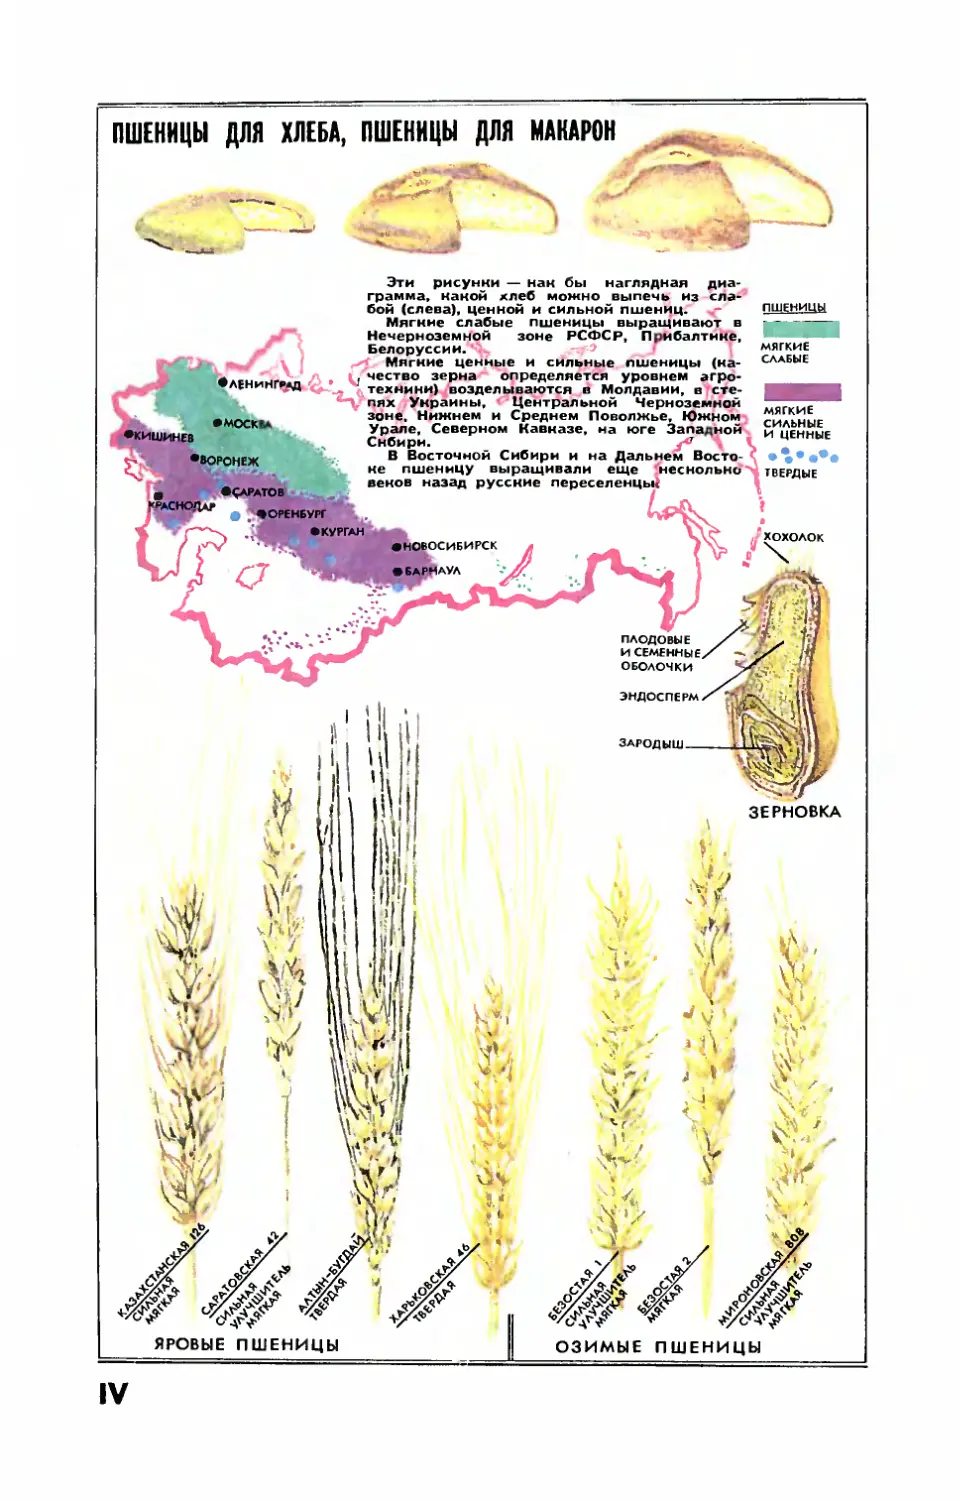 Рис. И. Разиной — Пшеницы для хлеба, пшеницы для макарон.